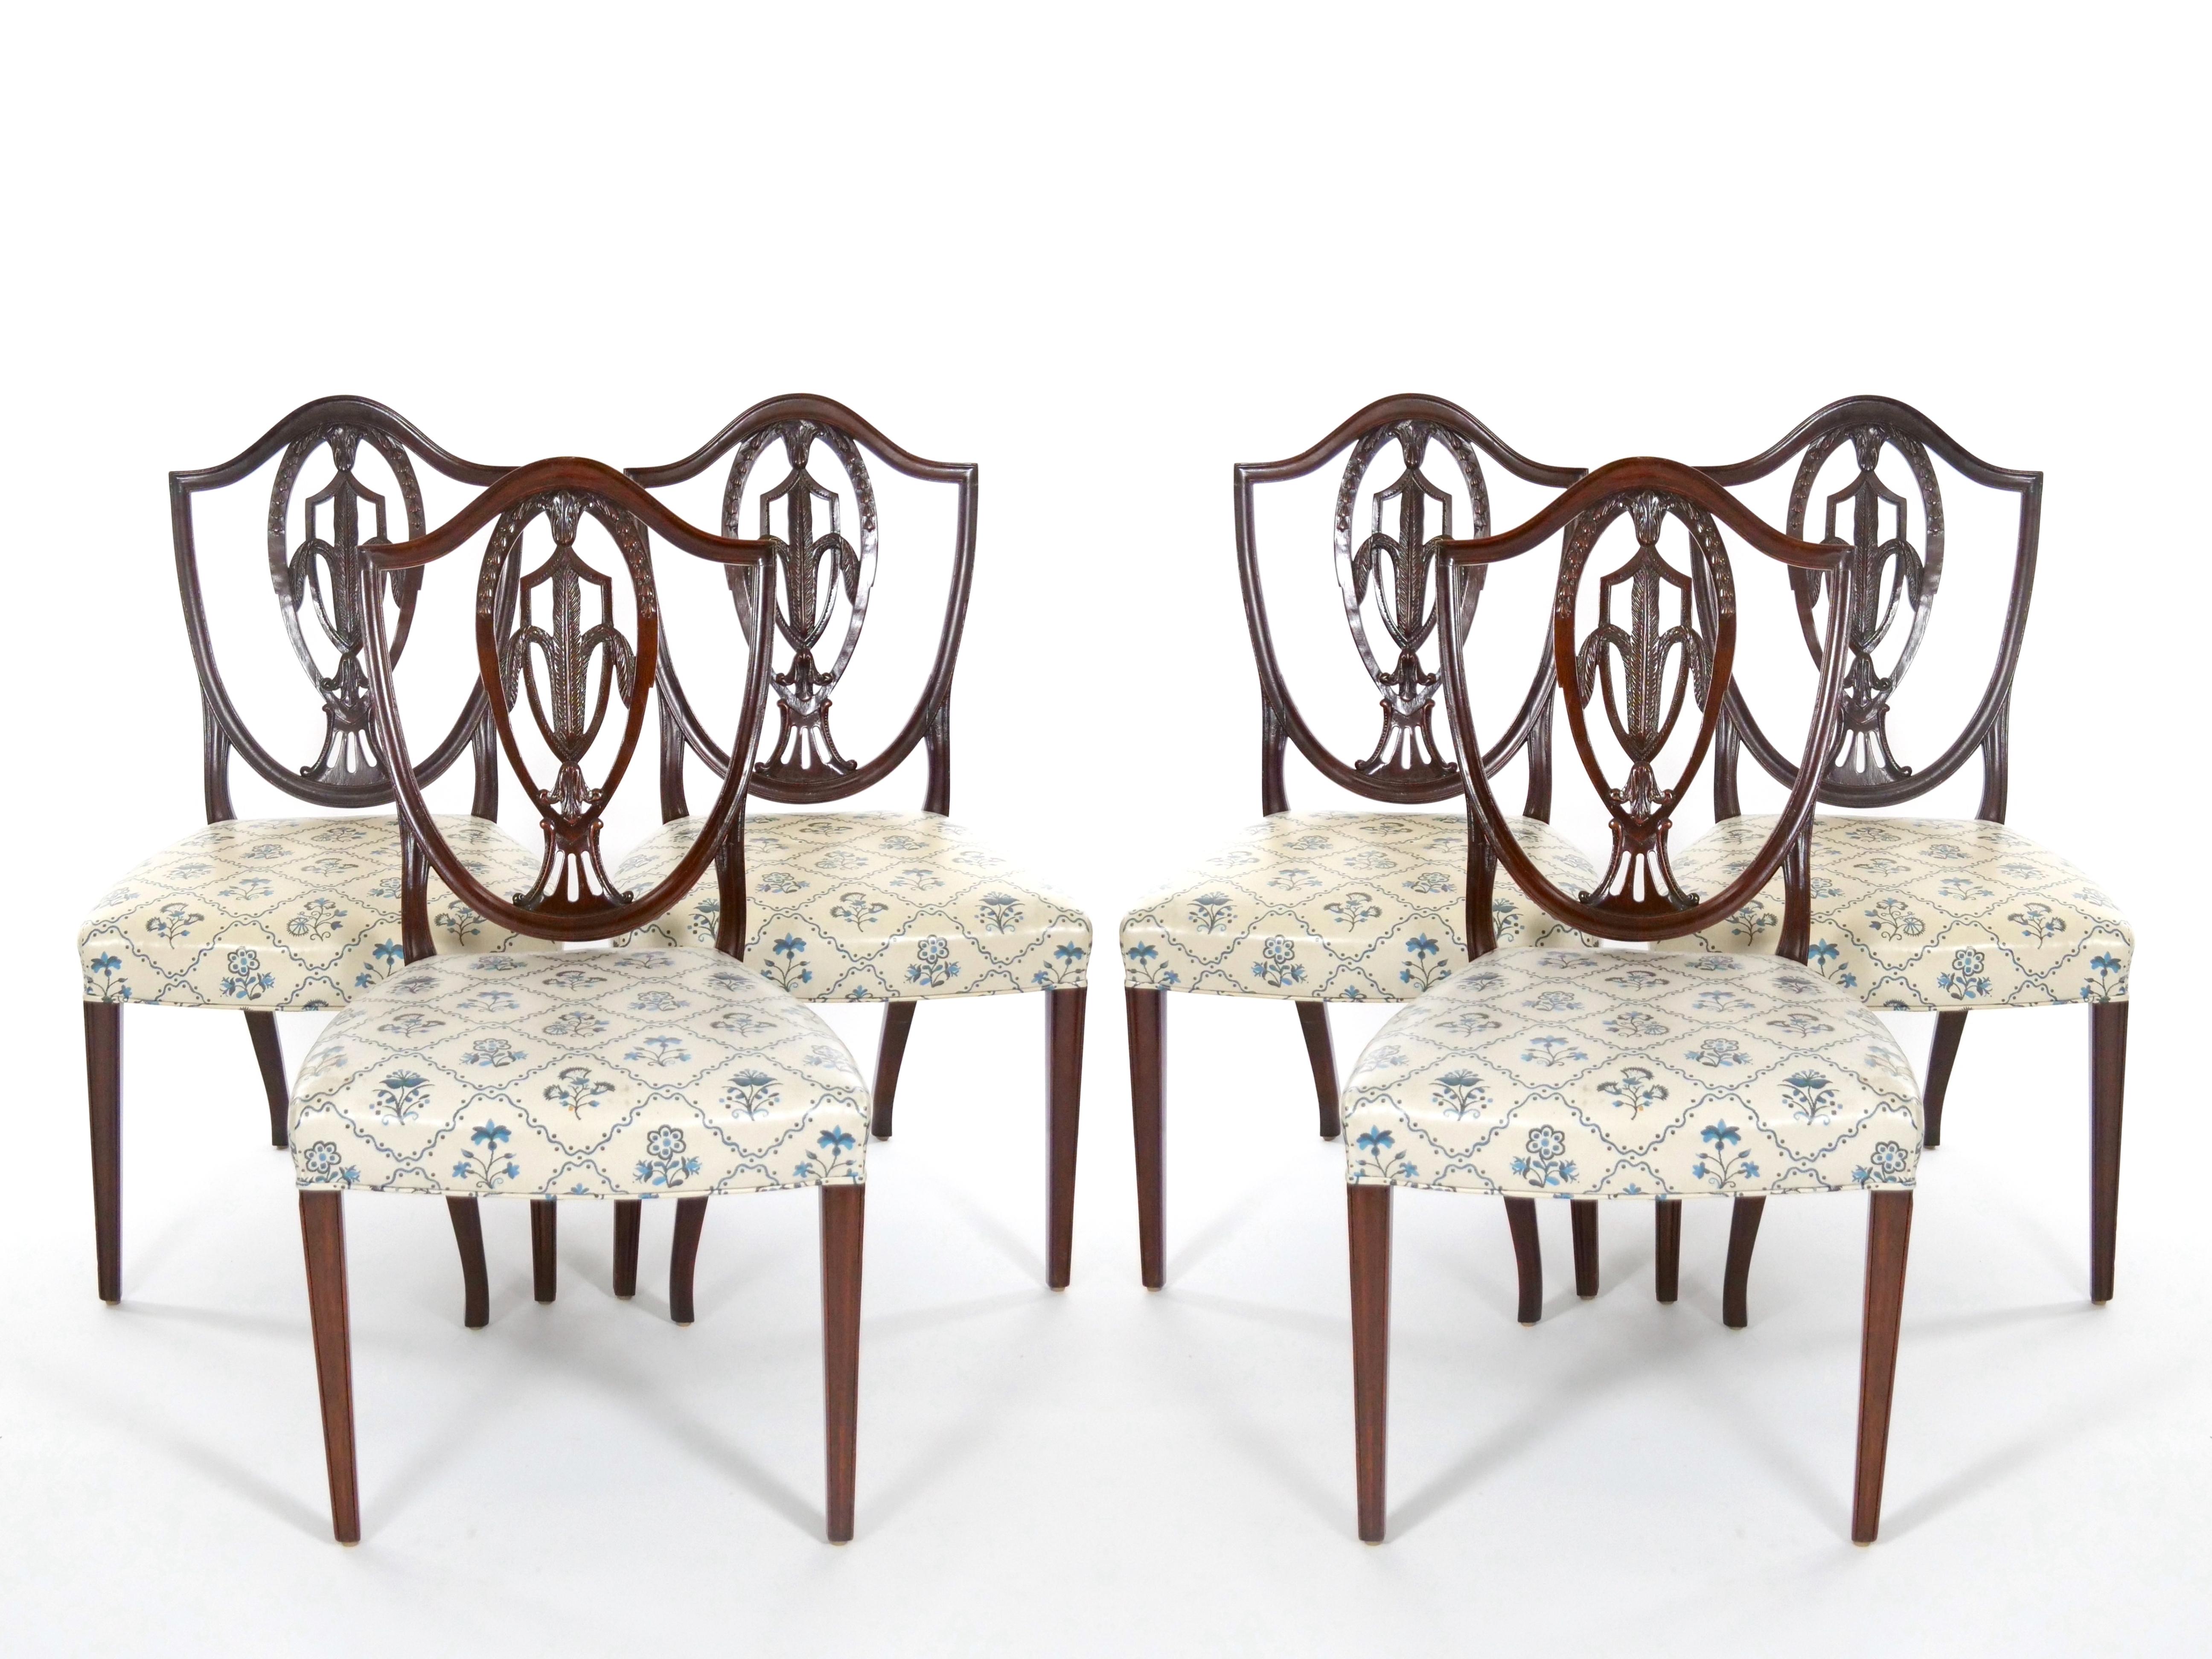 Voici un ensemble exquis de chaises de salle à manger anciennes de style Elegne, fabriquées dans un riche acajou, mettant en valeur l'élégant design Prince of Wales. L'ensemble comprend deux fauteuils distingués et six charmantes chaises d'appoint,